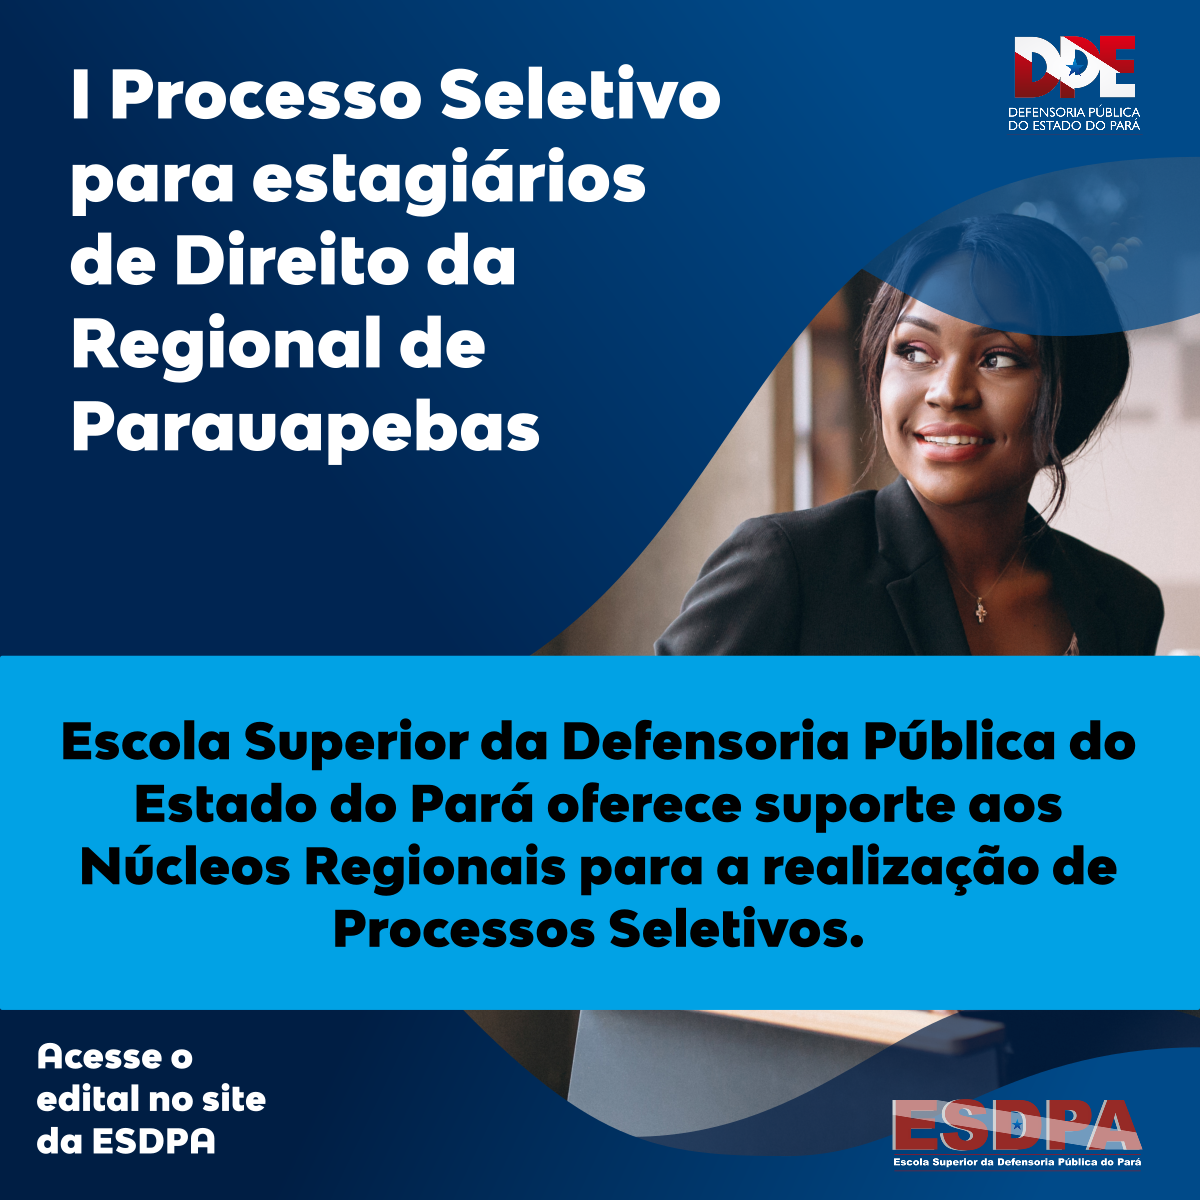 Escola Superior da Defensoria Pública do Estado do Pará oferece suporte aos Núcleos Regionais para a realização de Processos Seletivos